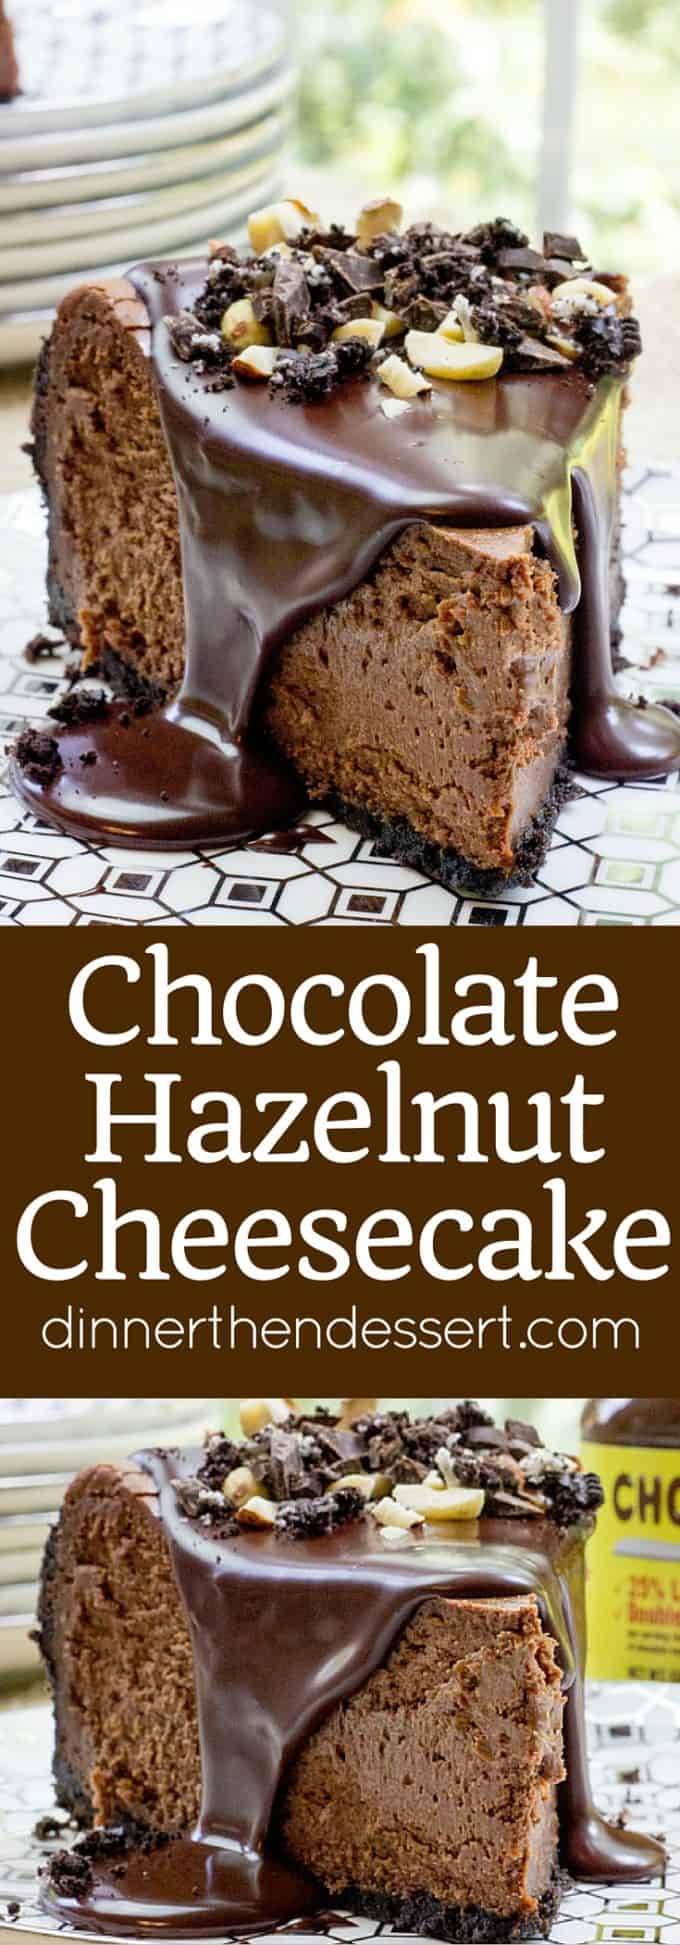 Chocolate Hazelnut Cheesecake - Dinner, then Dessert